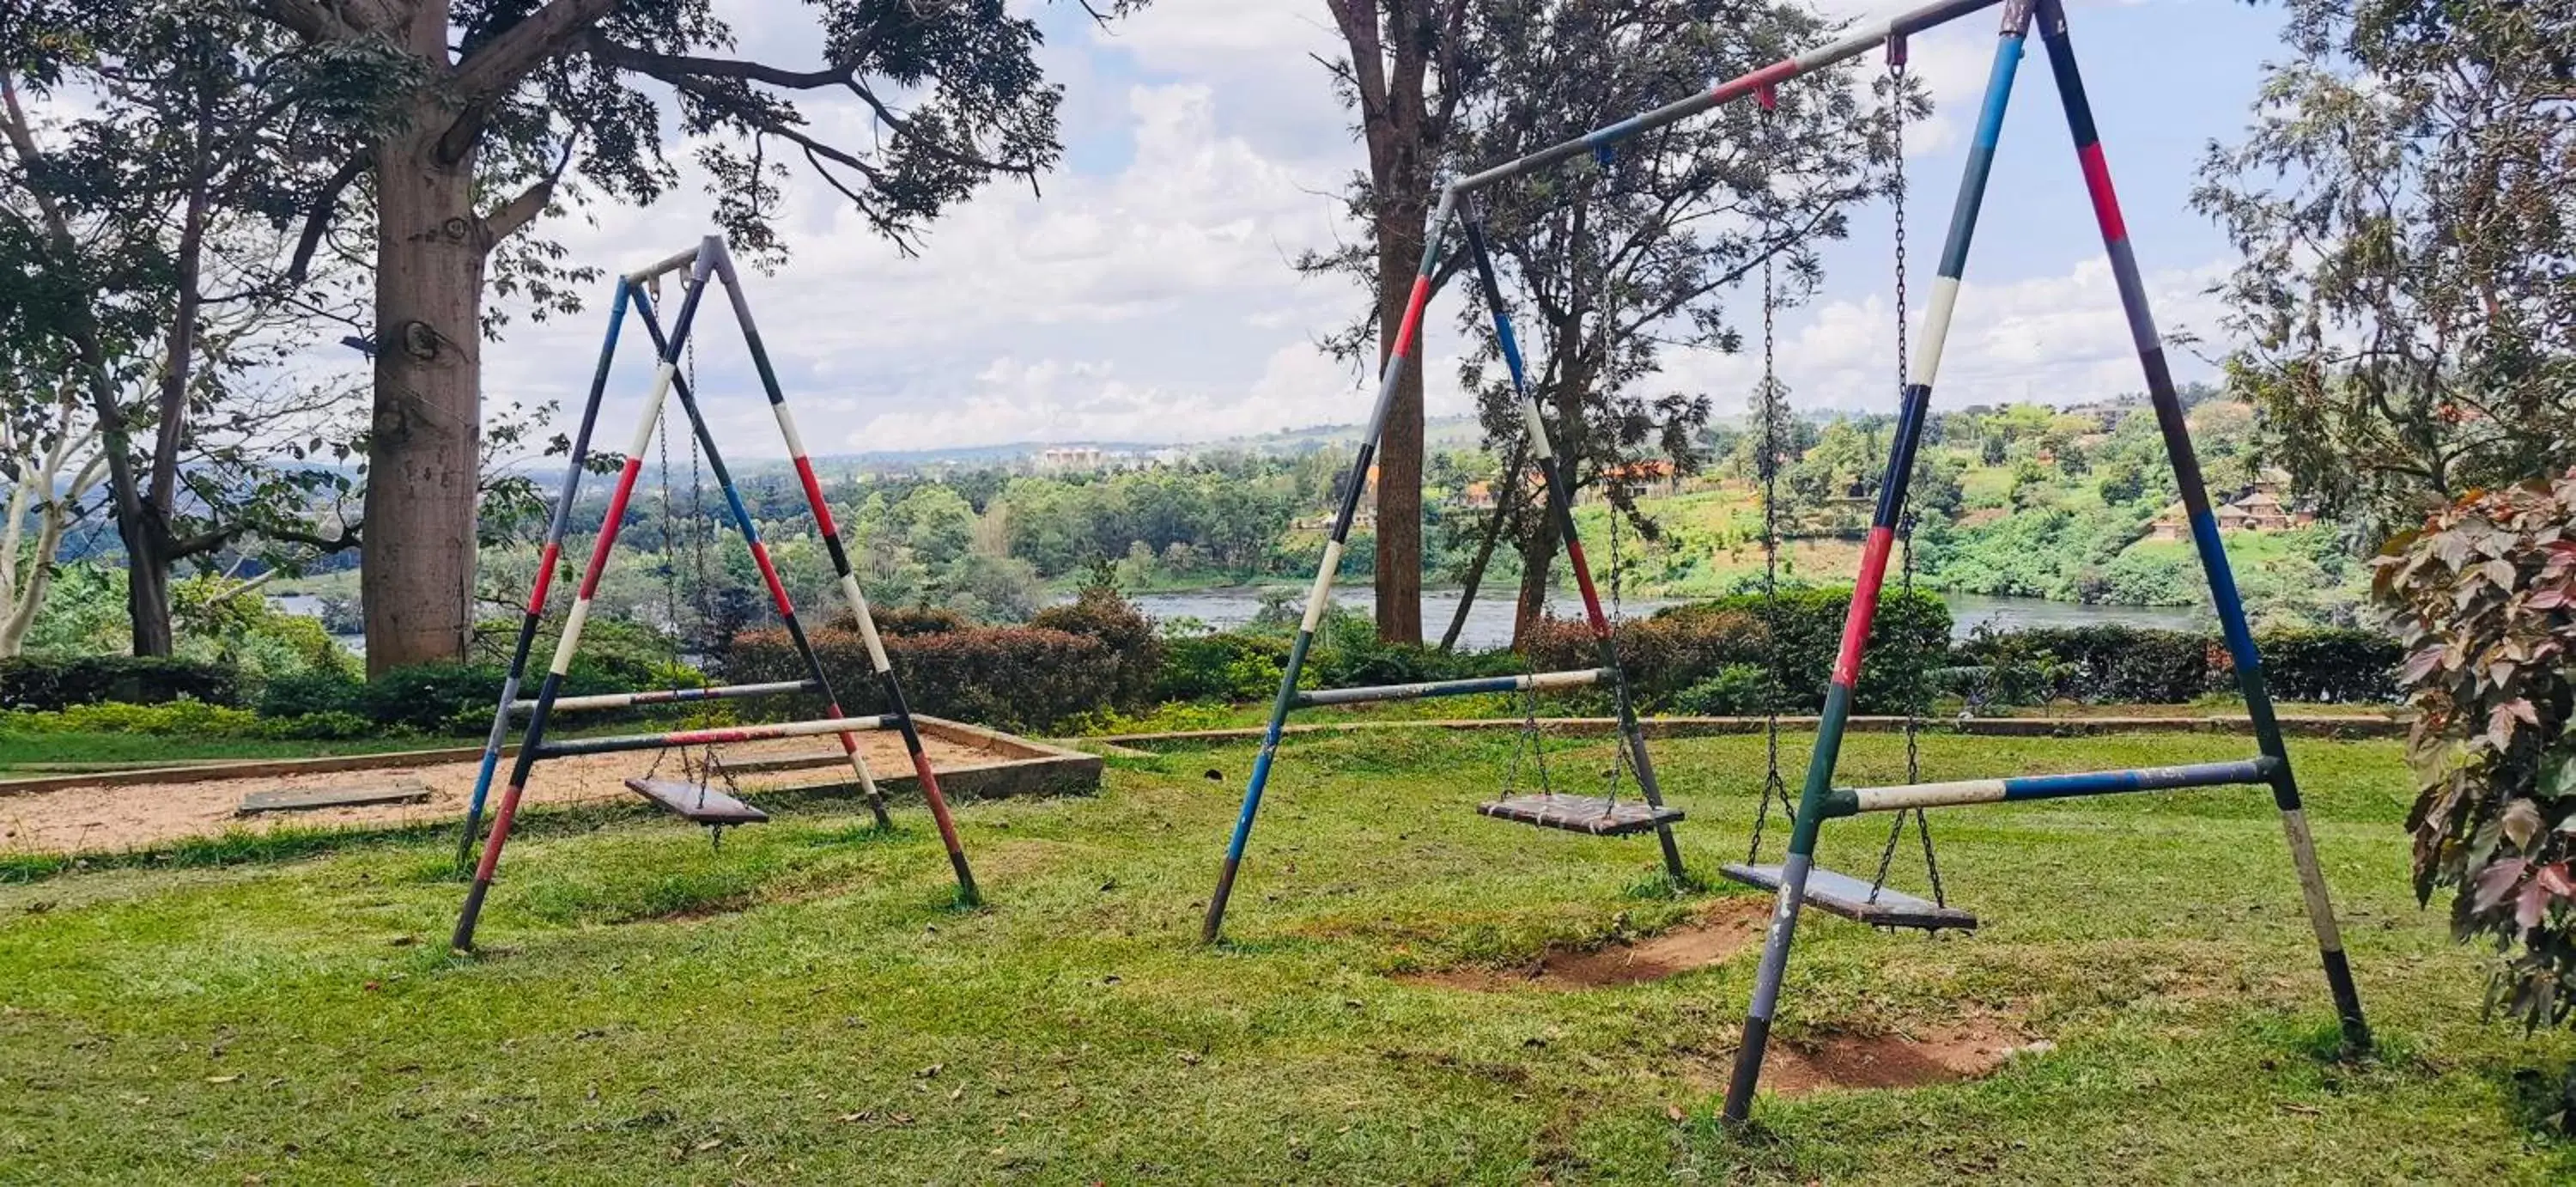 Garden, Children's Play Area in Jinja Nile Resort